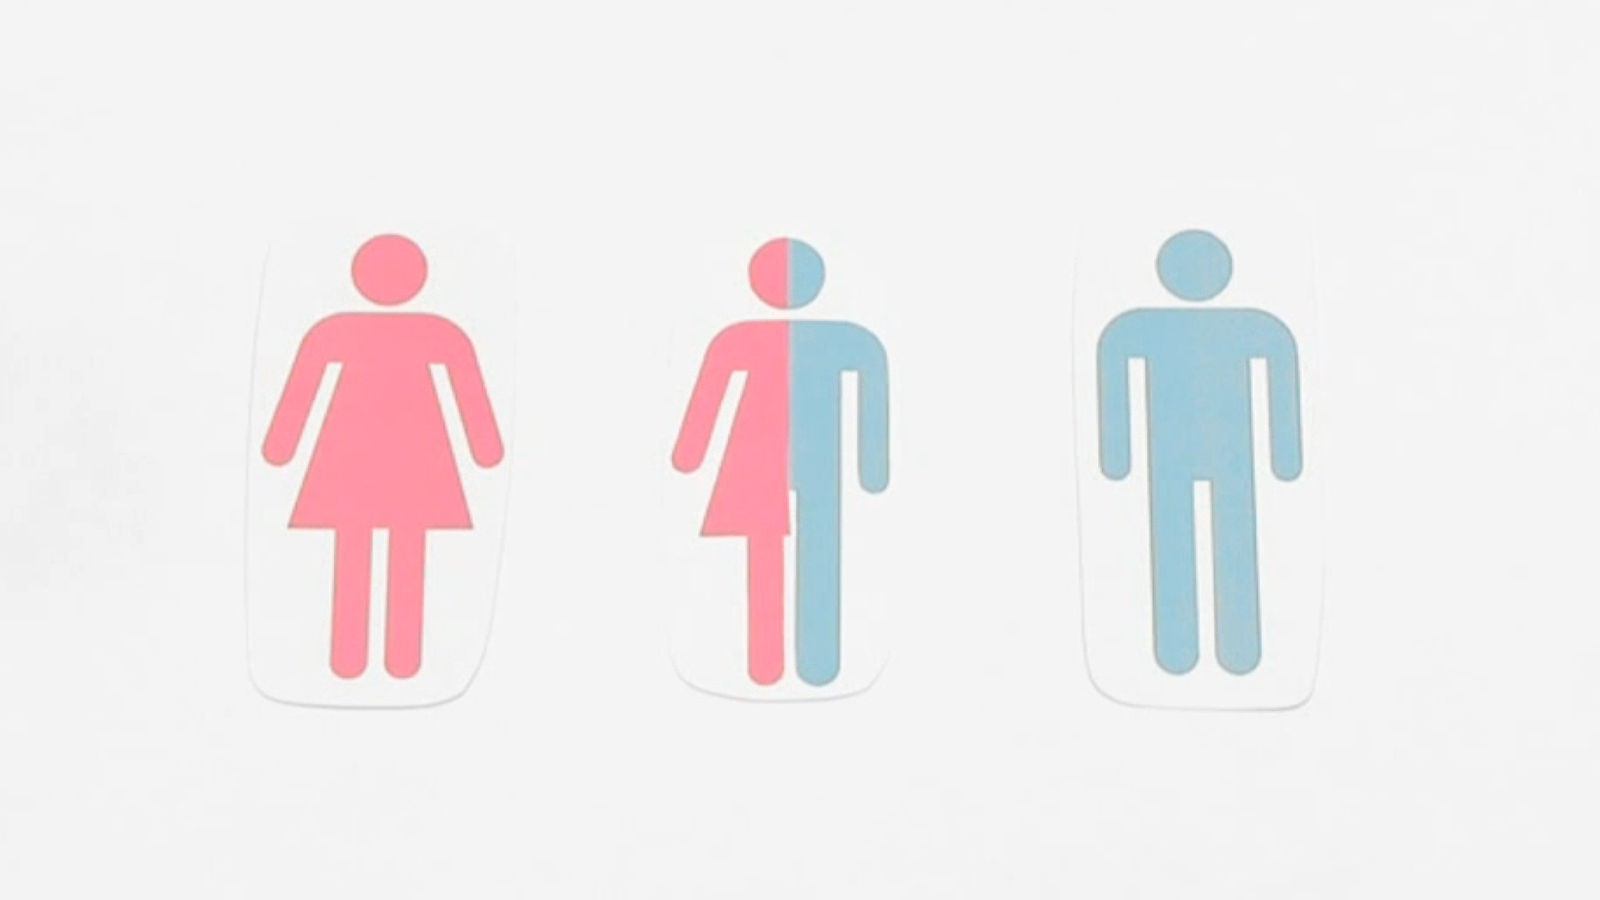 Toilettenzeichen von Mann, Frau, und halb Mann - halb Frau.